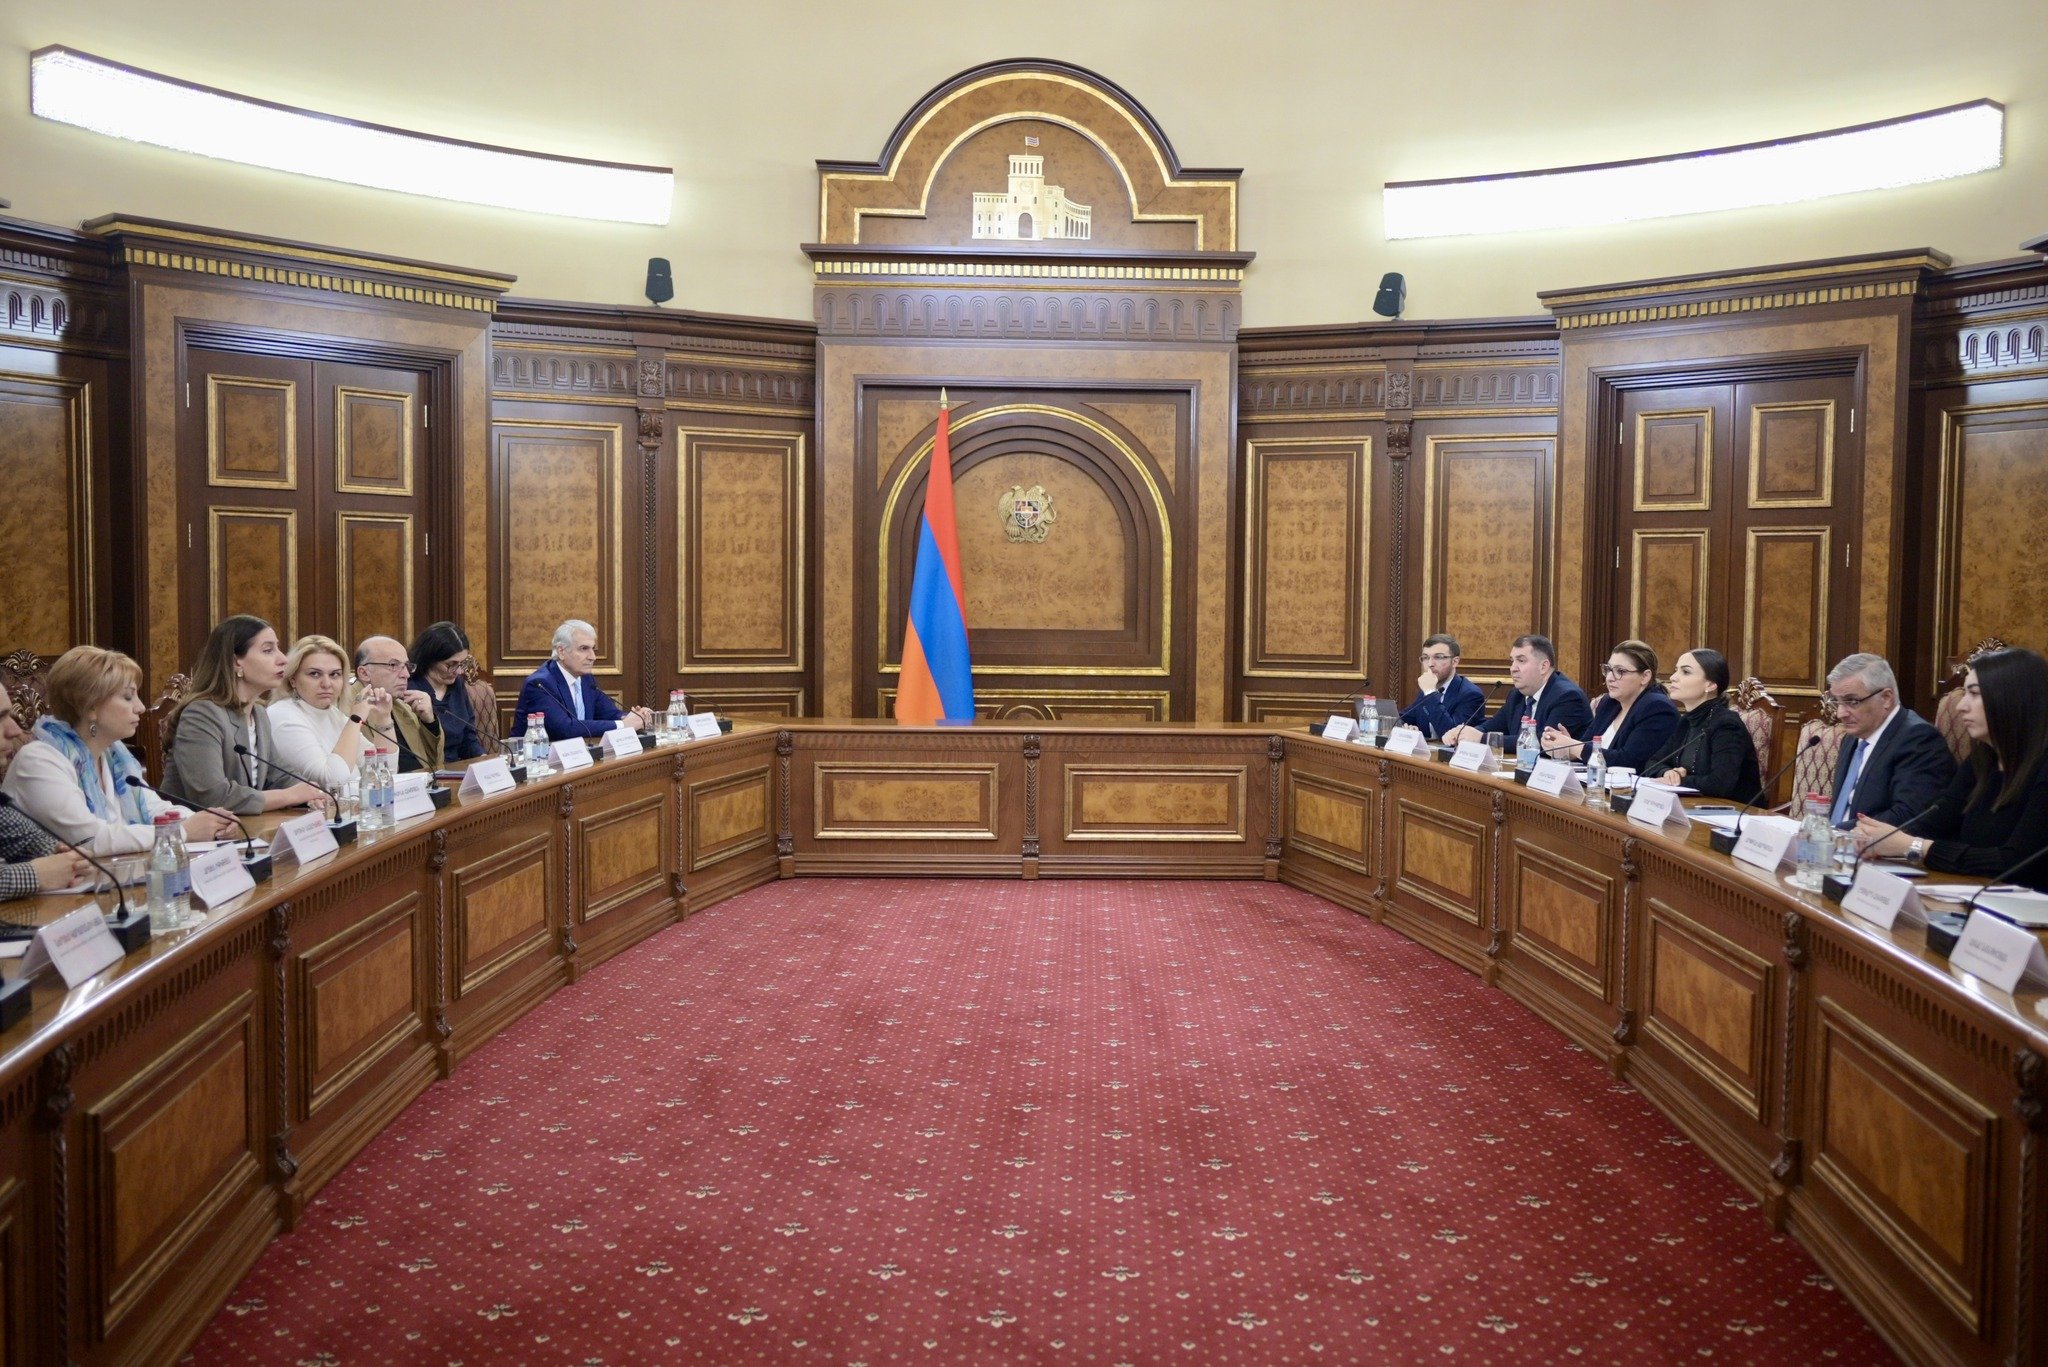 Տեղի ունեցավ առաջին հանդիպումը ԵՄ-Հայաստան քաղհասարակության պլատֆորմի և ՀՀ Կառավարության անդամների միջև